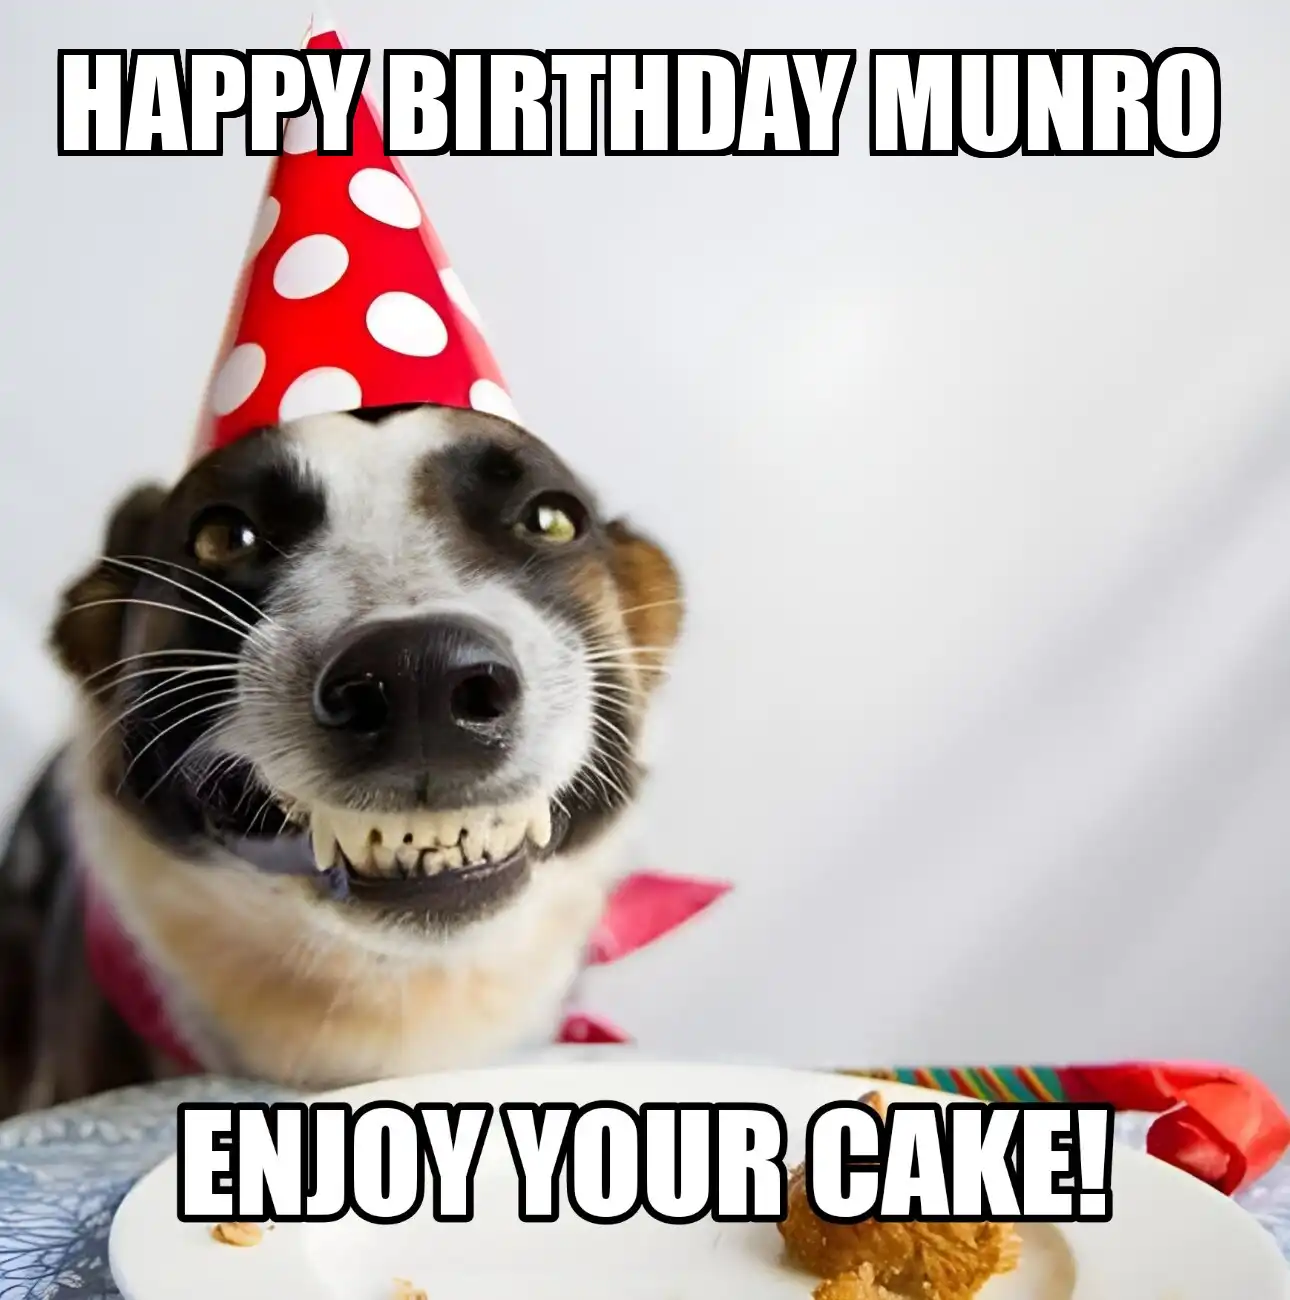 Happy Birthday Munro Enjoy Your Cake Dog Meme